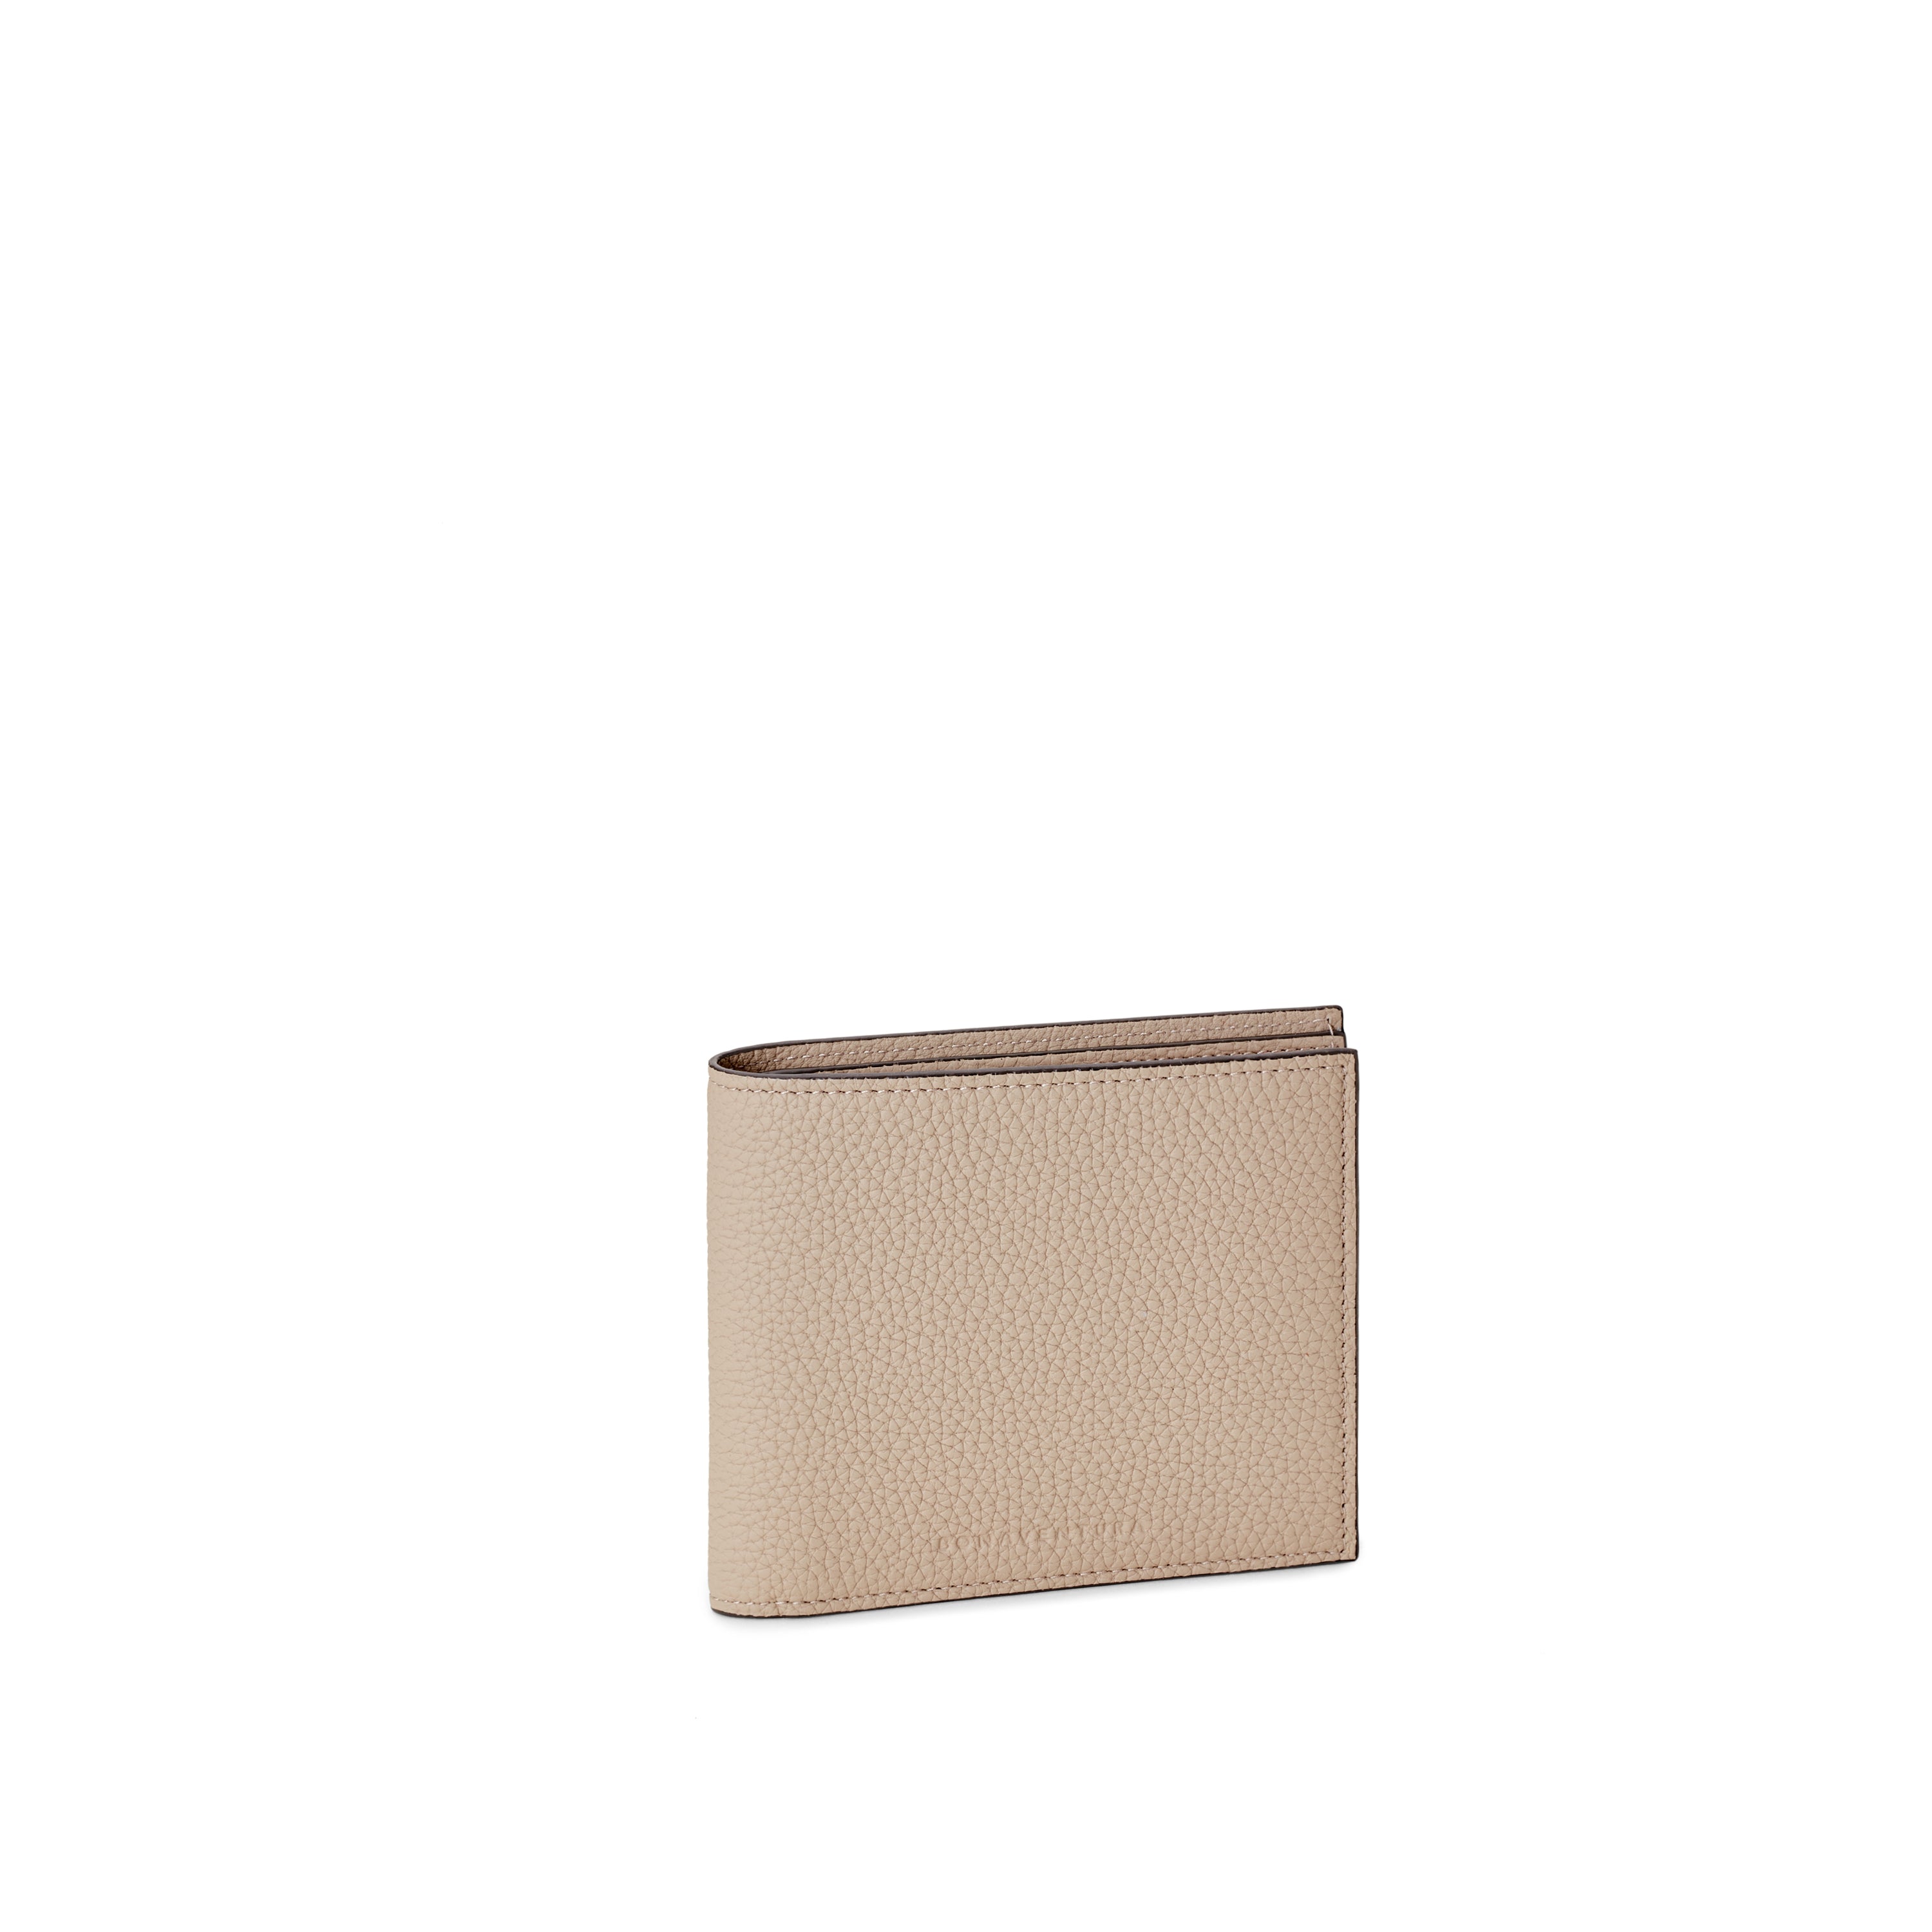 上質なレザーの財布 / カードケース – イタリア(ミラノ)発の高級革製品 ...